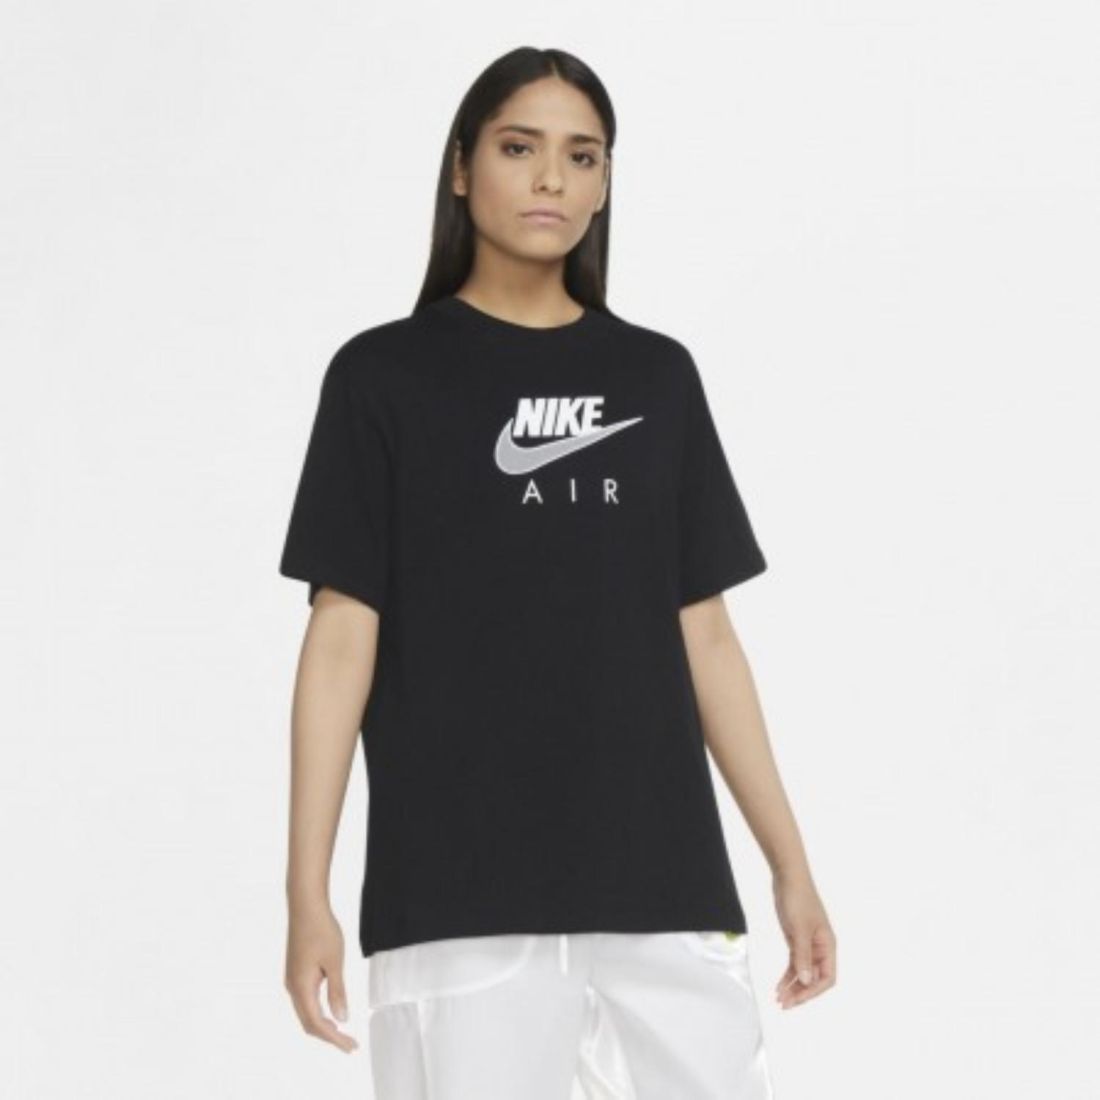 Стильная женская футболка Nike Air